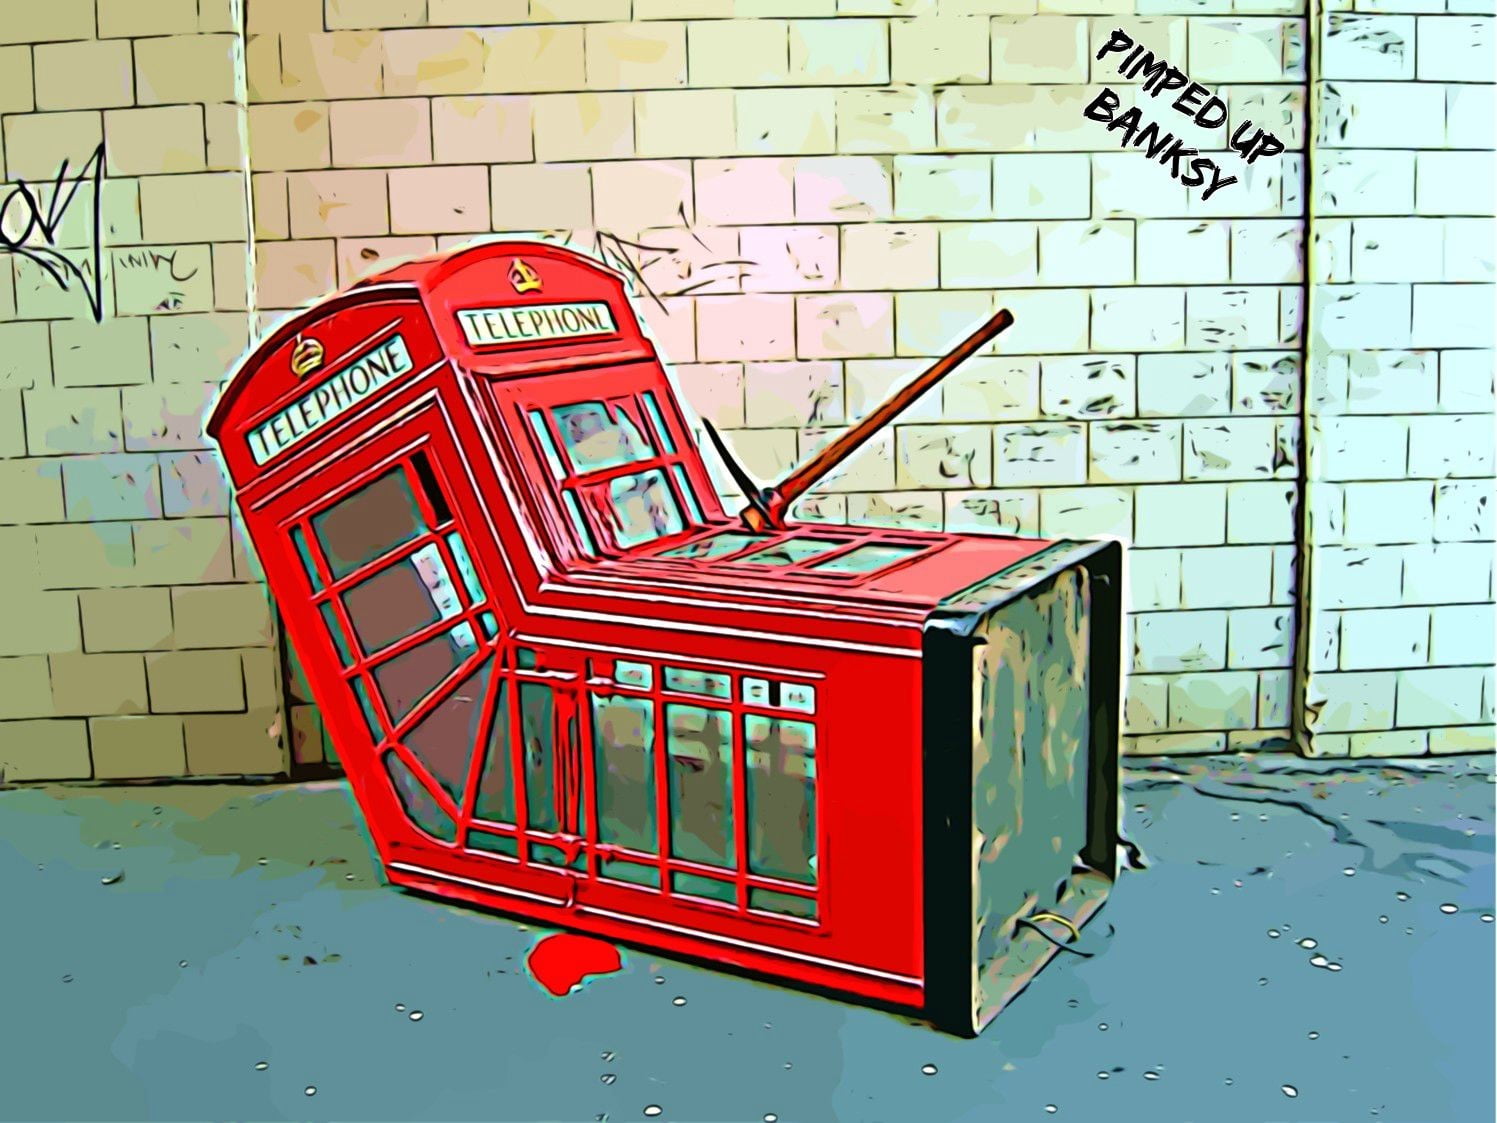 digital art, Banksy, graffiti, London, phone box, humor, text